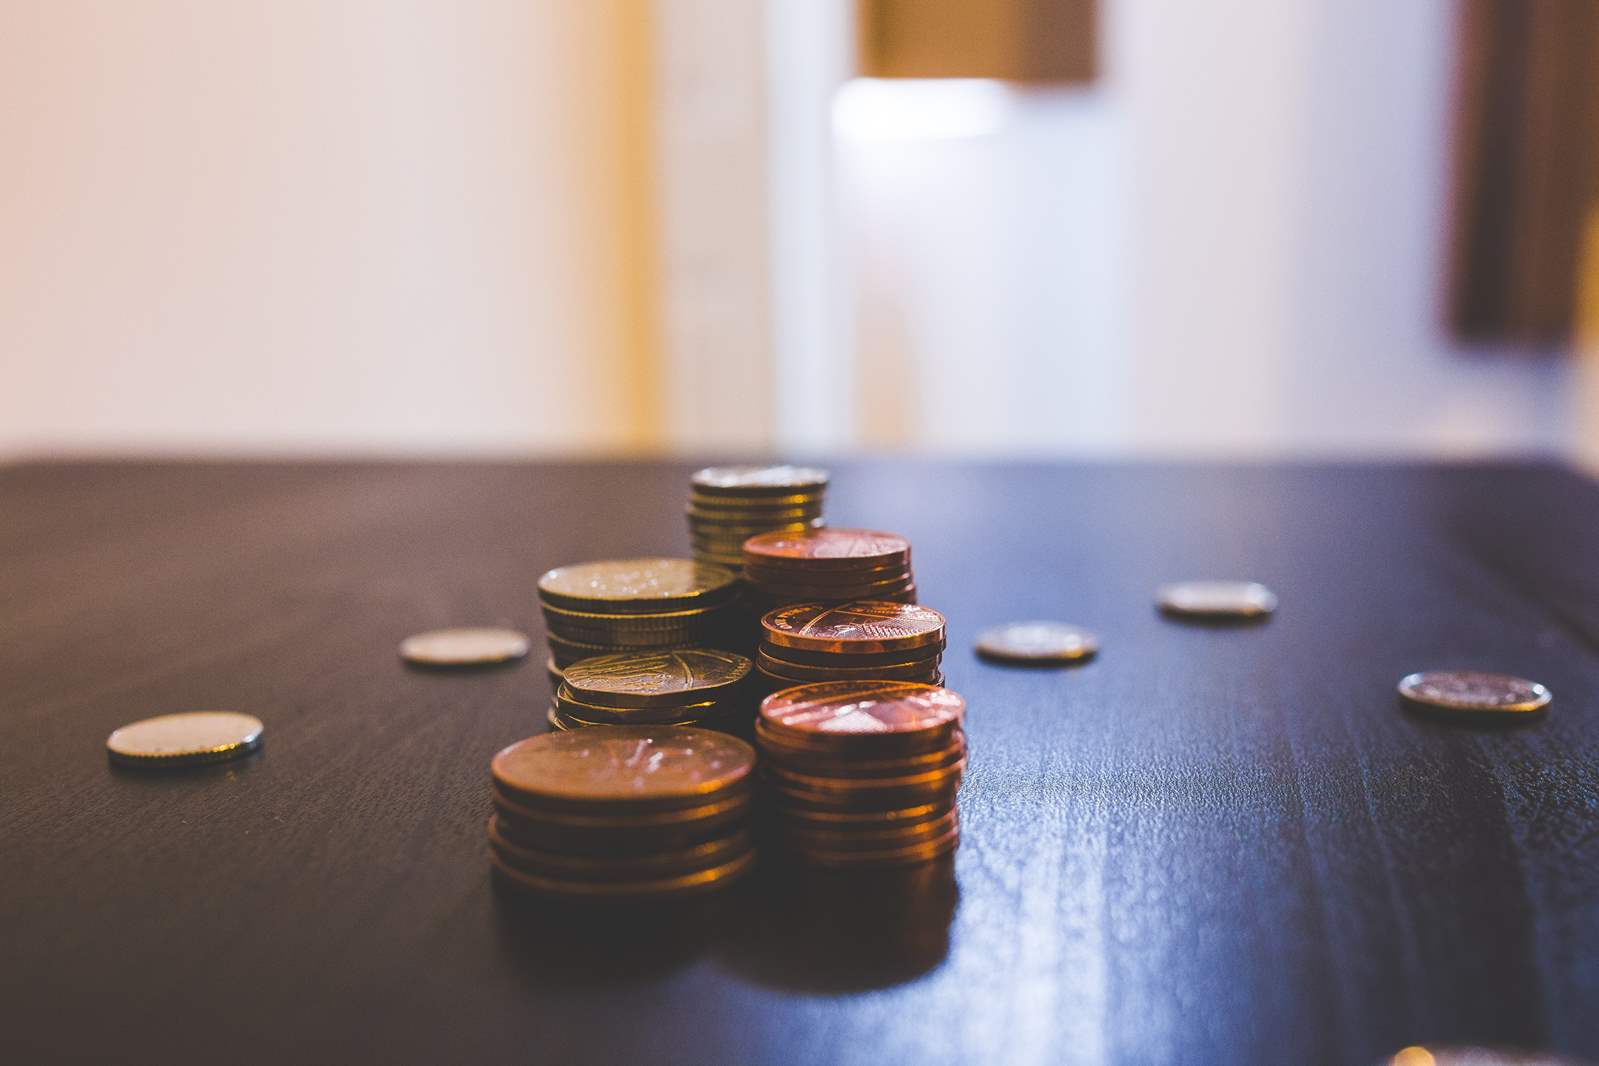 Inwestycja w monety kruszcowe – zalety i wady rozwiązania